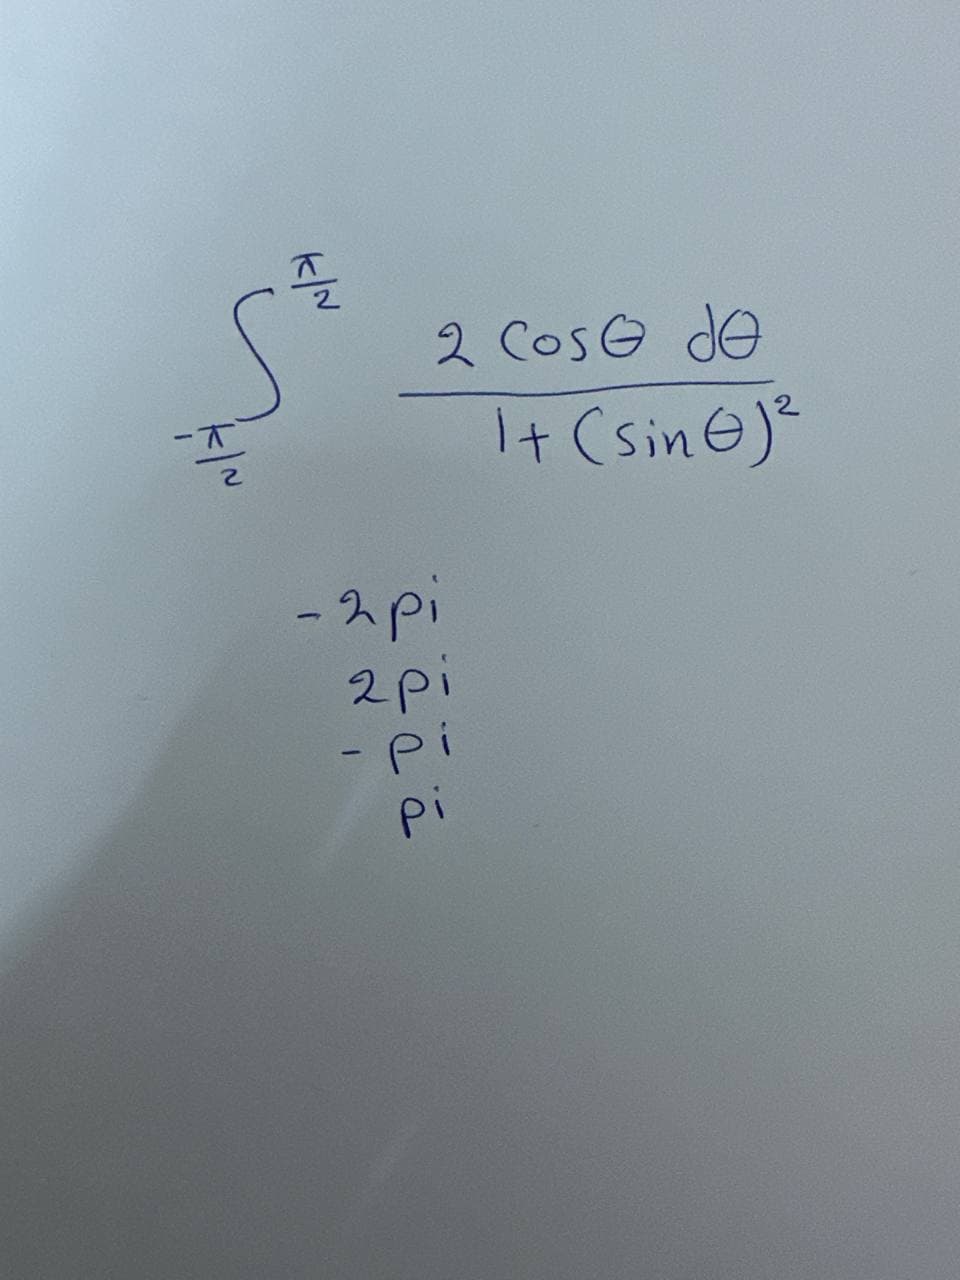 -T
K/N
2 Cose de
1+ (sin)²
-2pi
2pi
Pi
pi